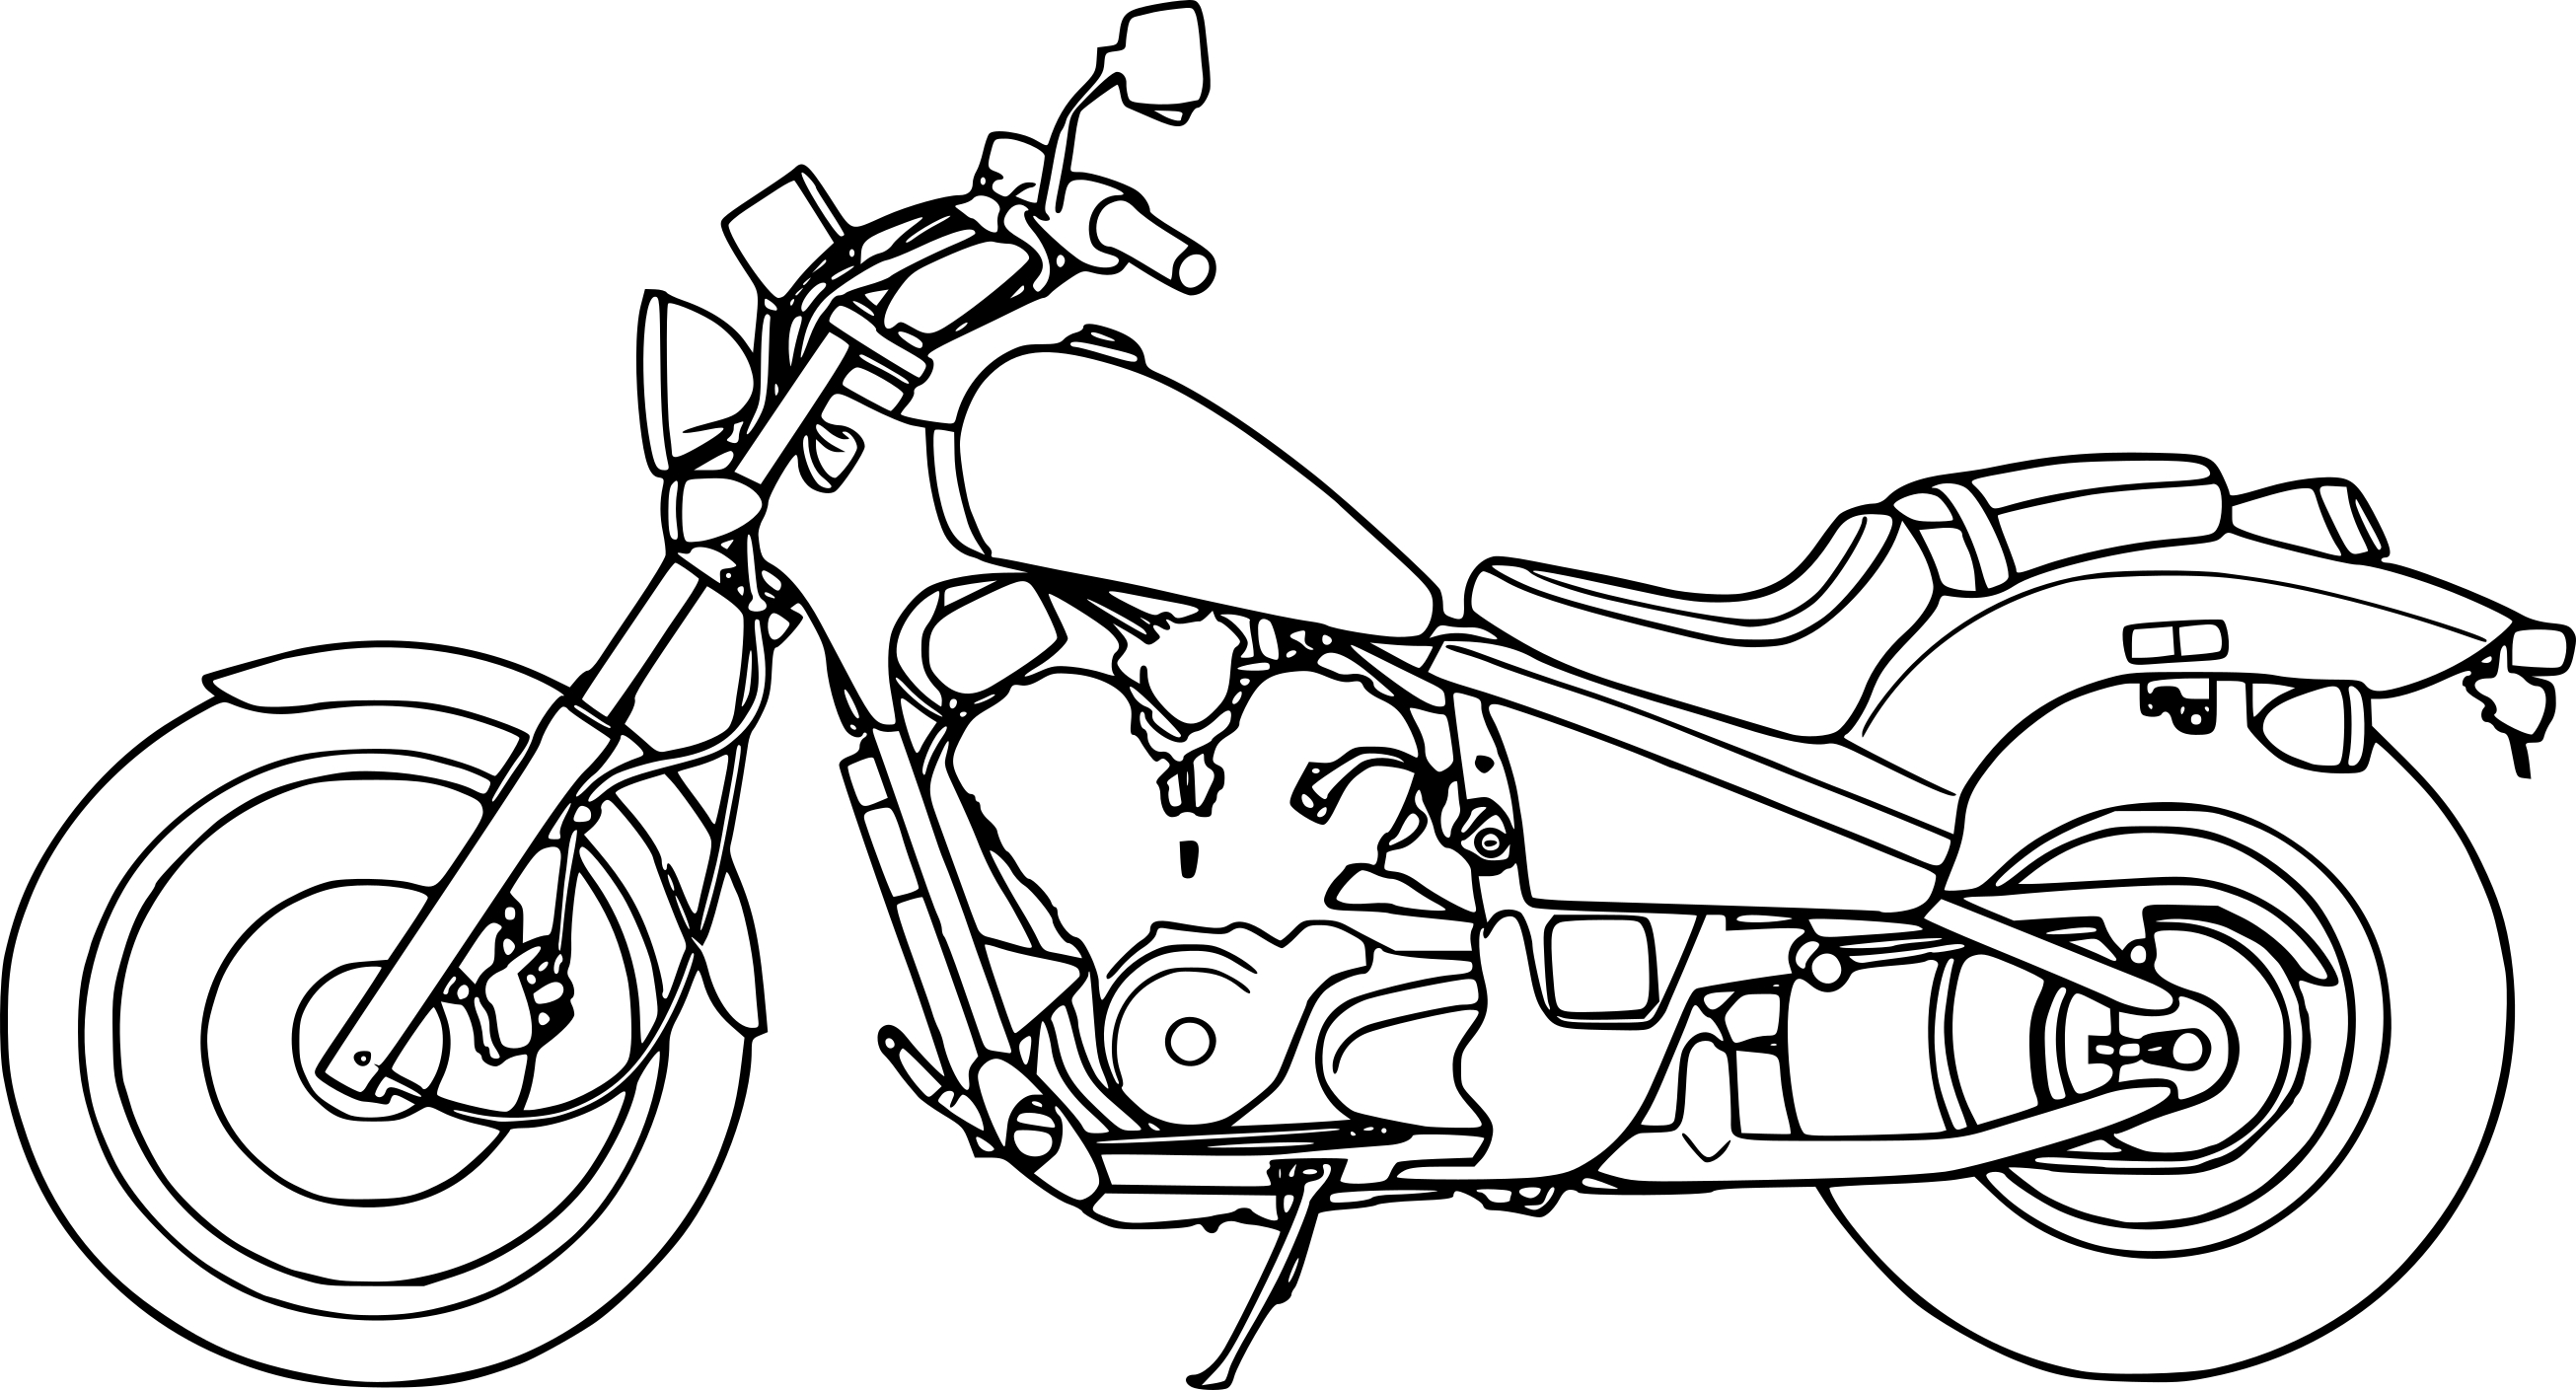 Honda Motorcycle coloring page